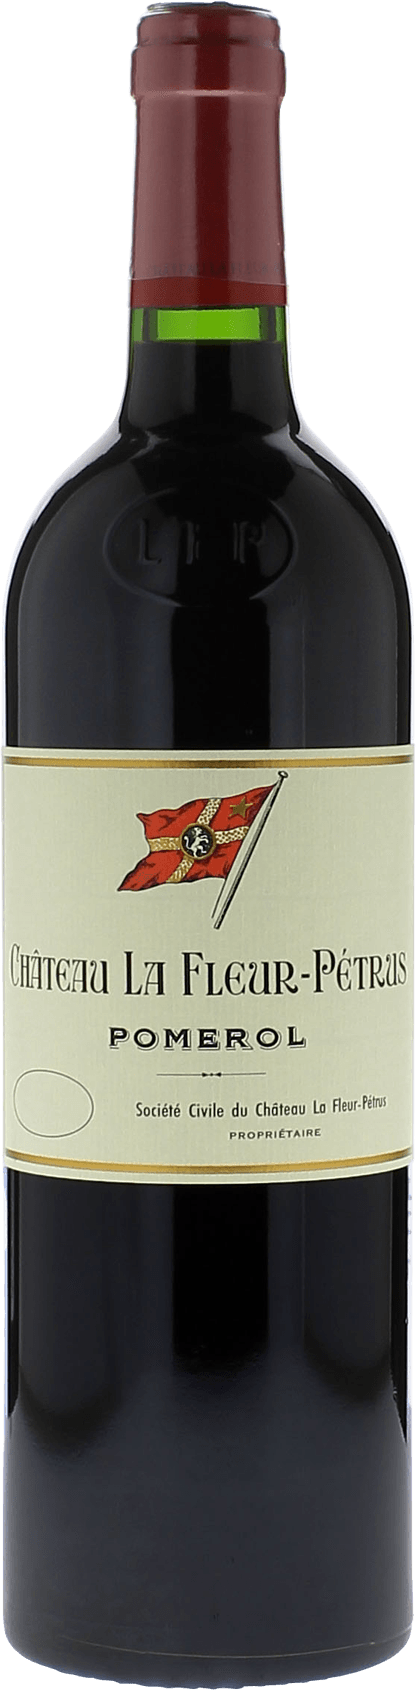 La fleur petrus 1999  Pomerol, Bordeaux rouge